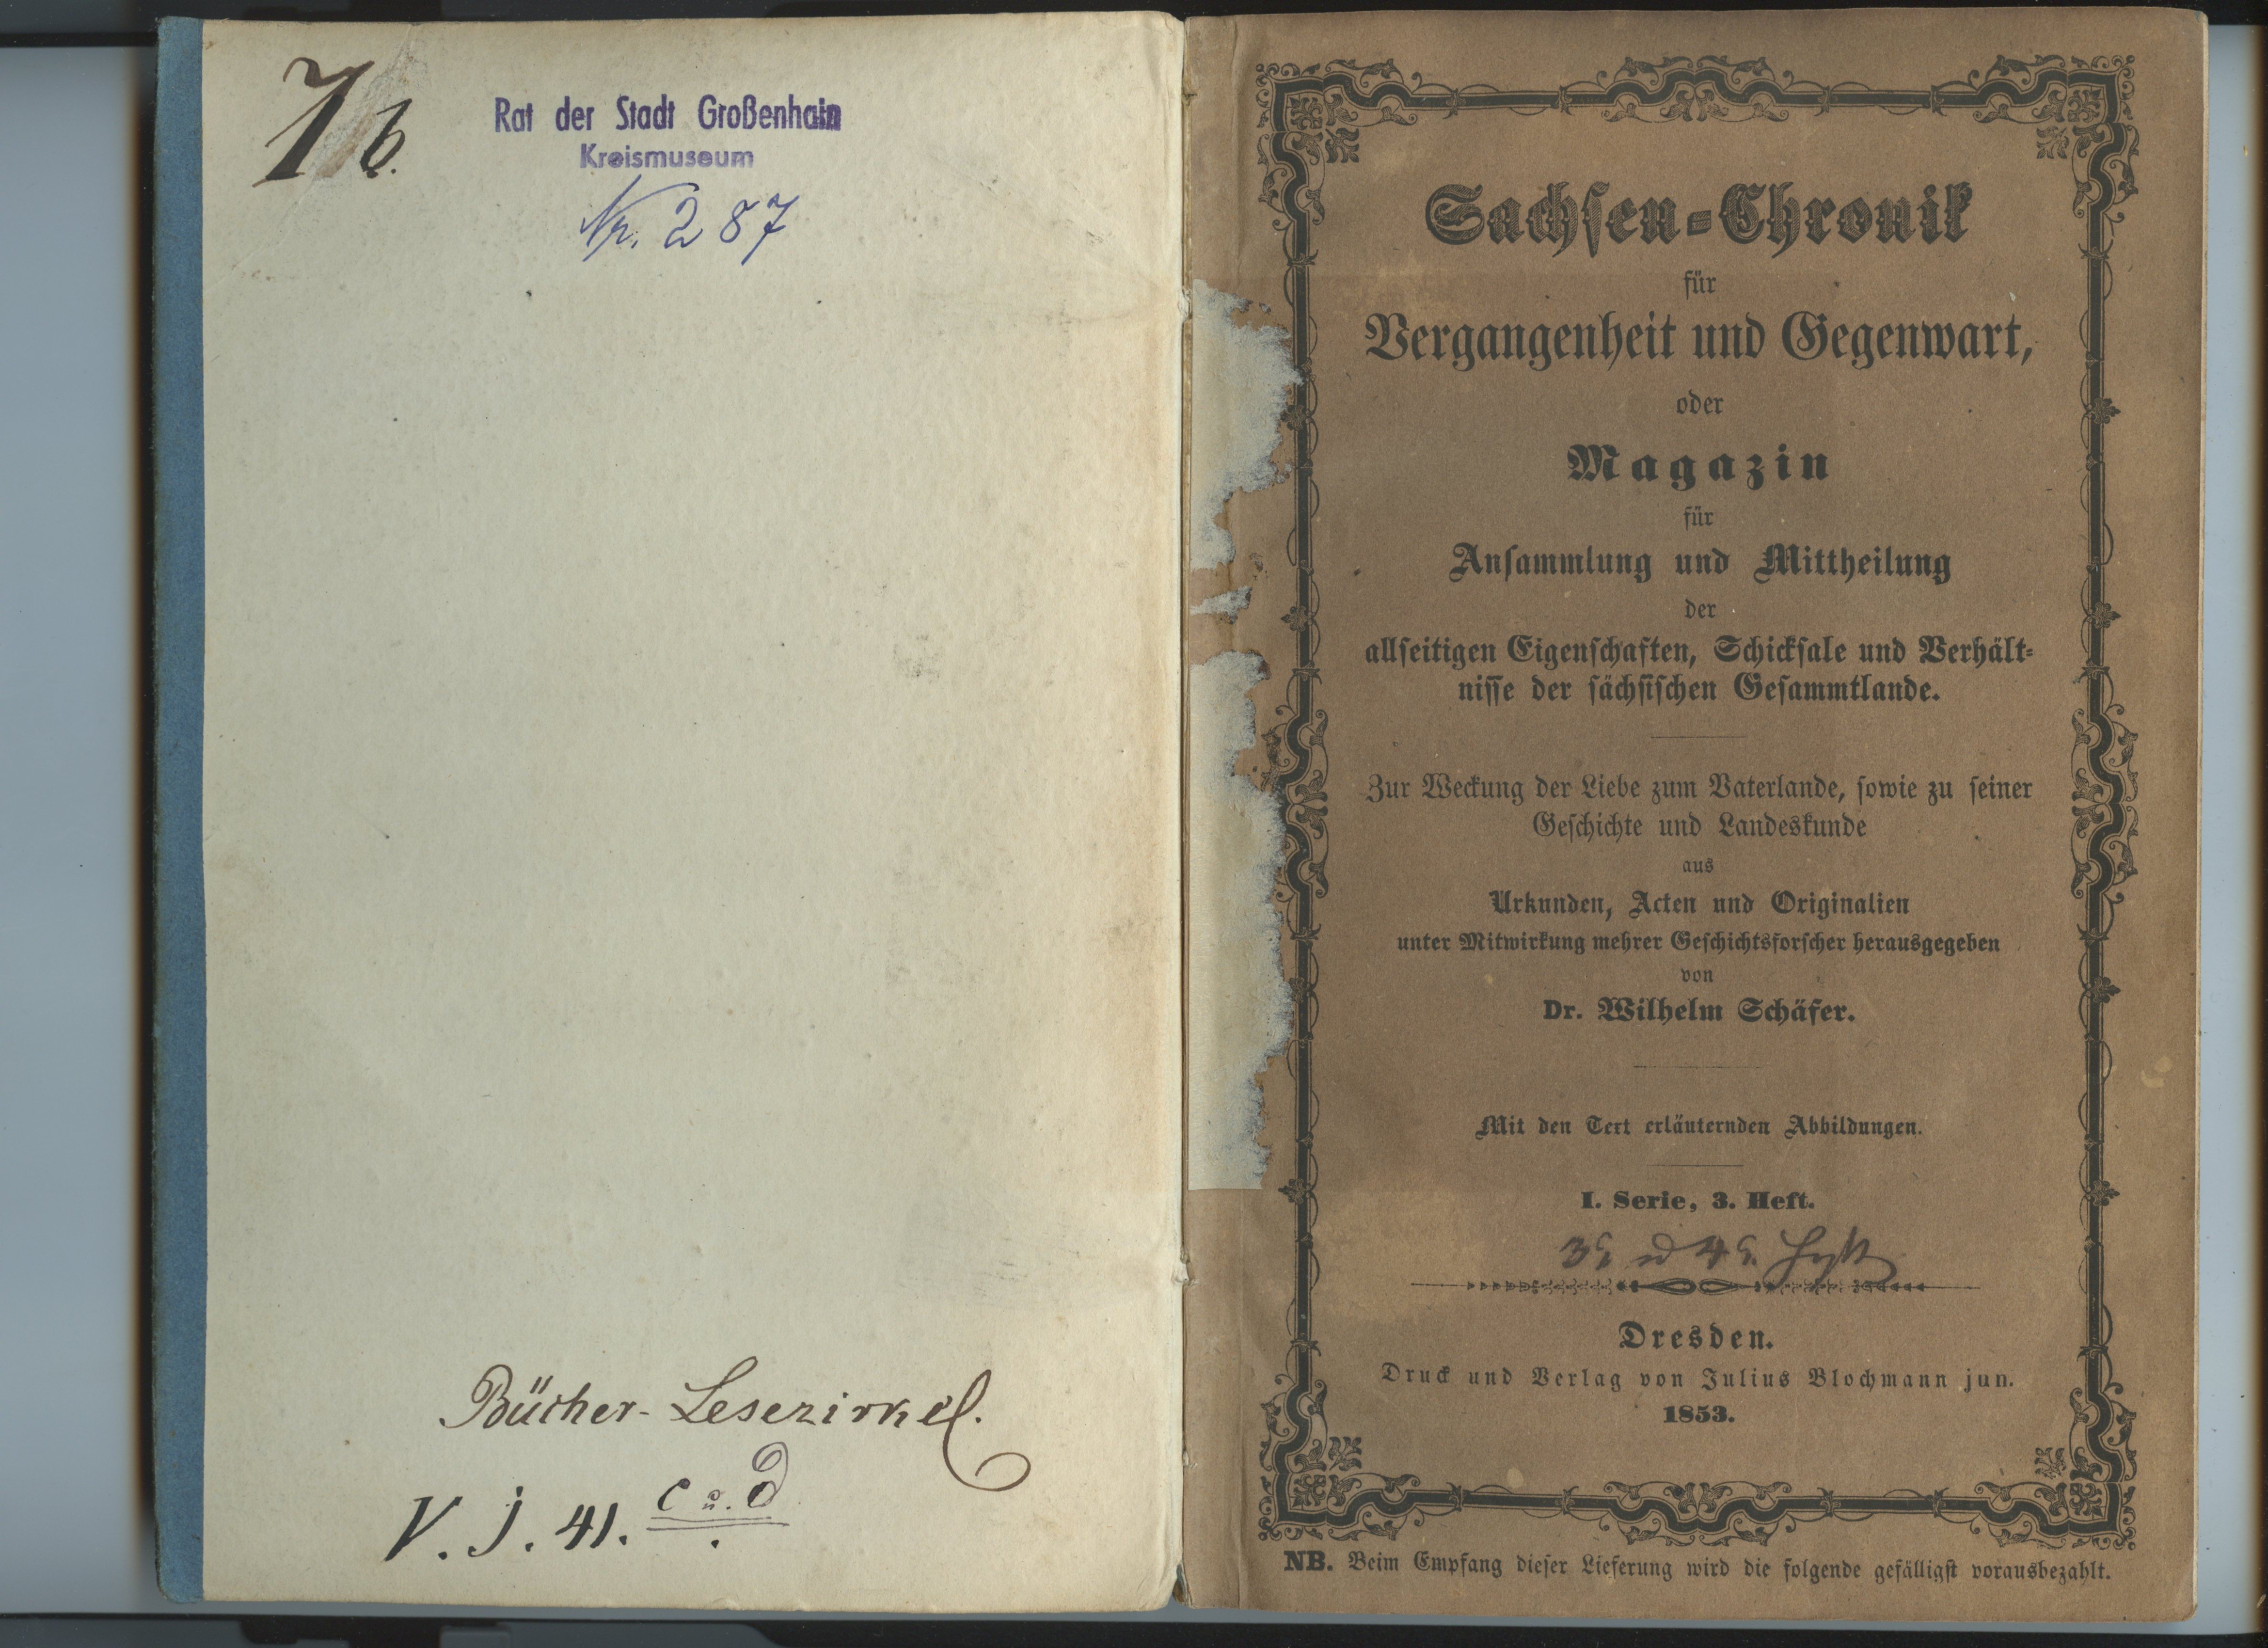 Schäfer, Wilhelm (Hrsg.): Sachsen-Chronik für Vergangenheit und Gegenwart, I/3+4 1853 (Museum Alte Lateinschule CC BY-NC-SA)